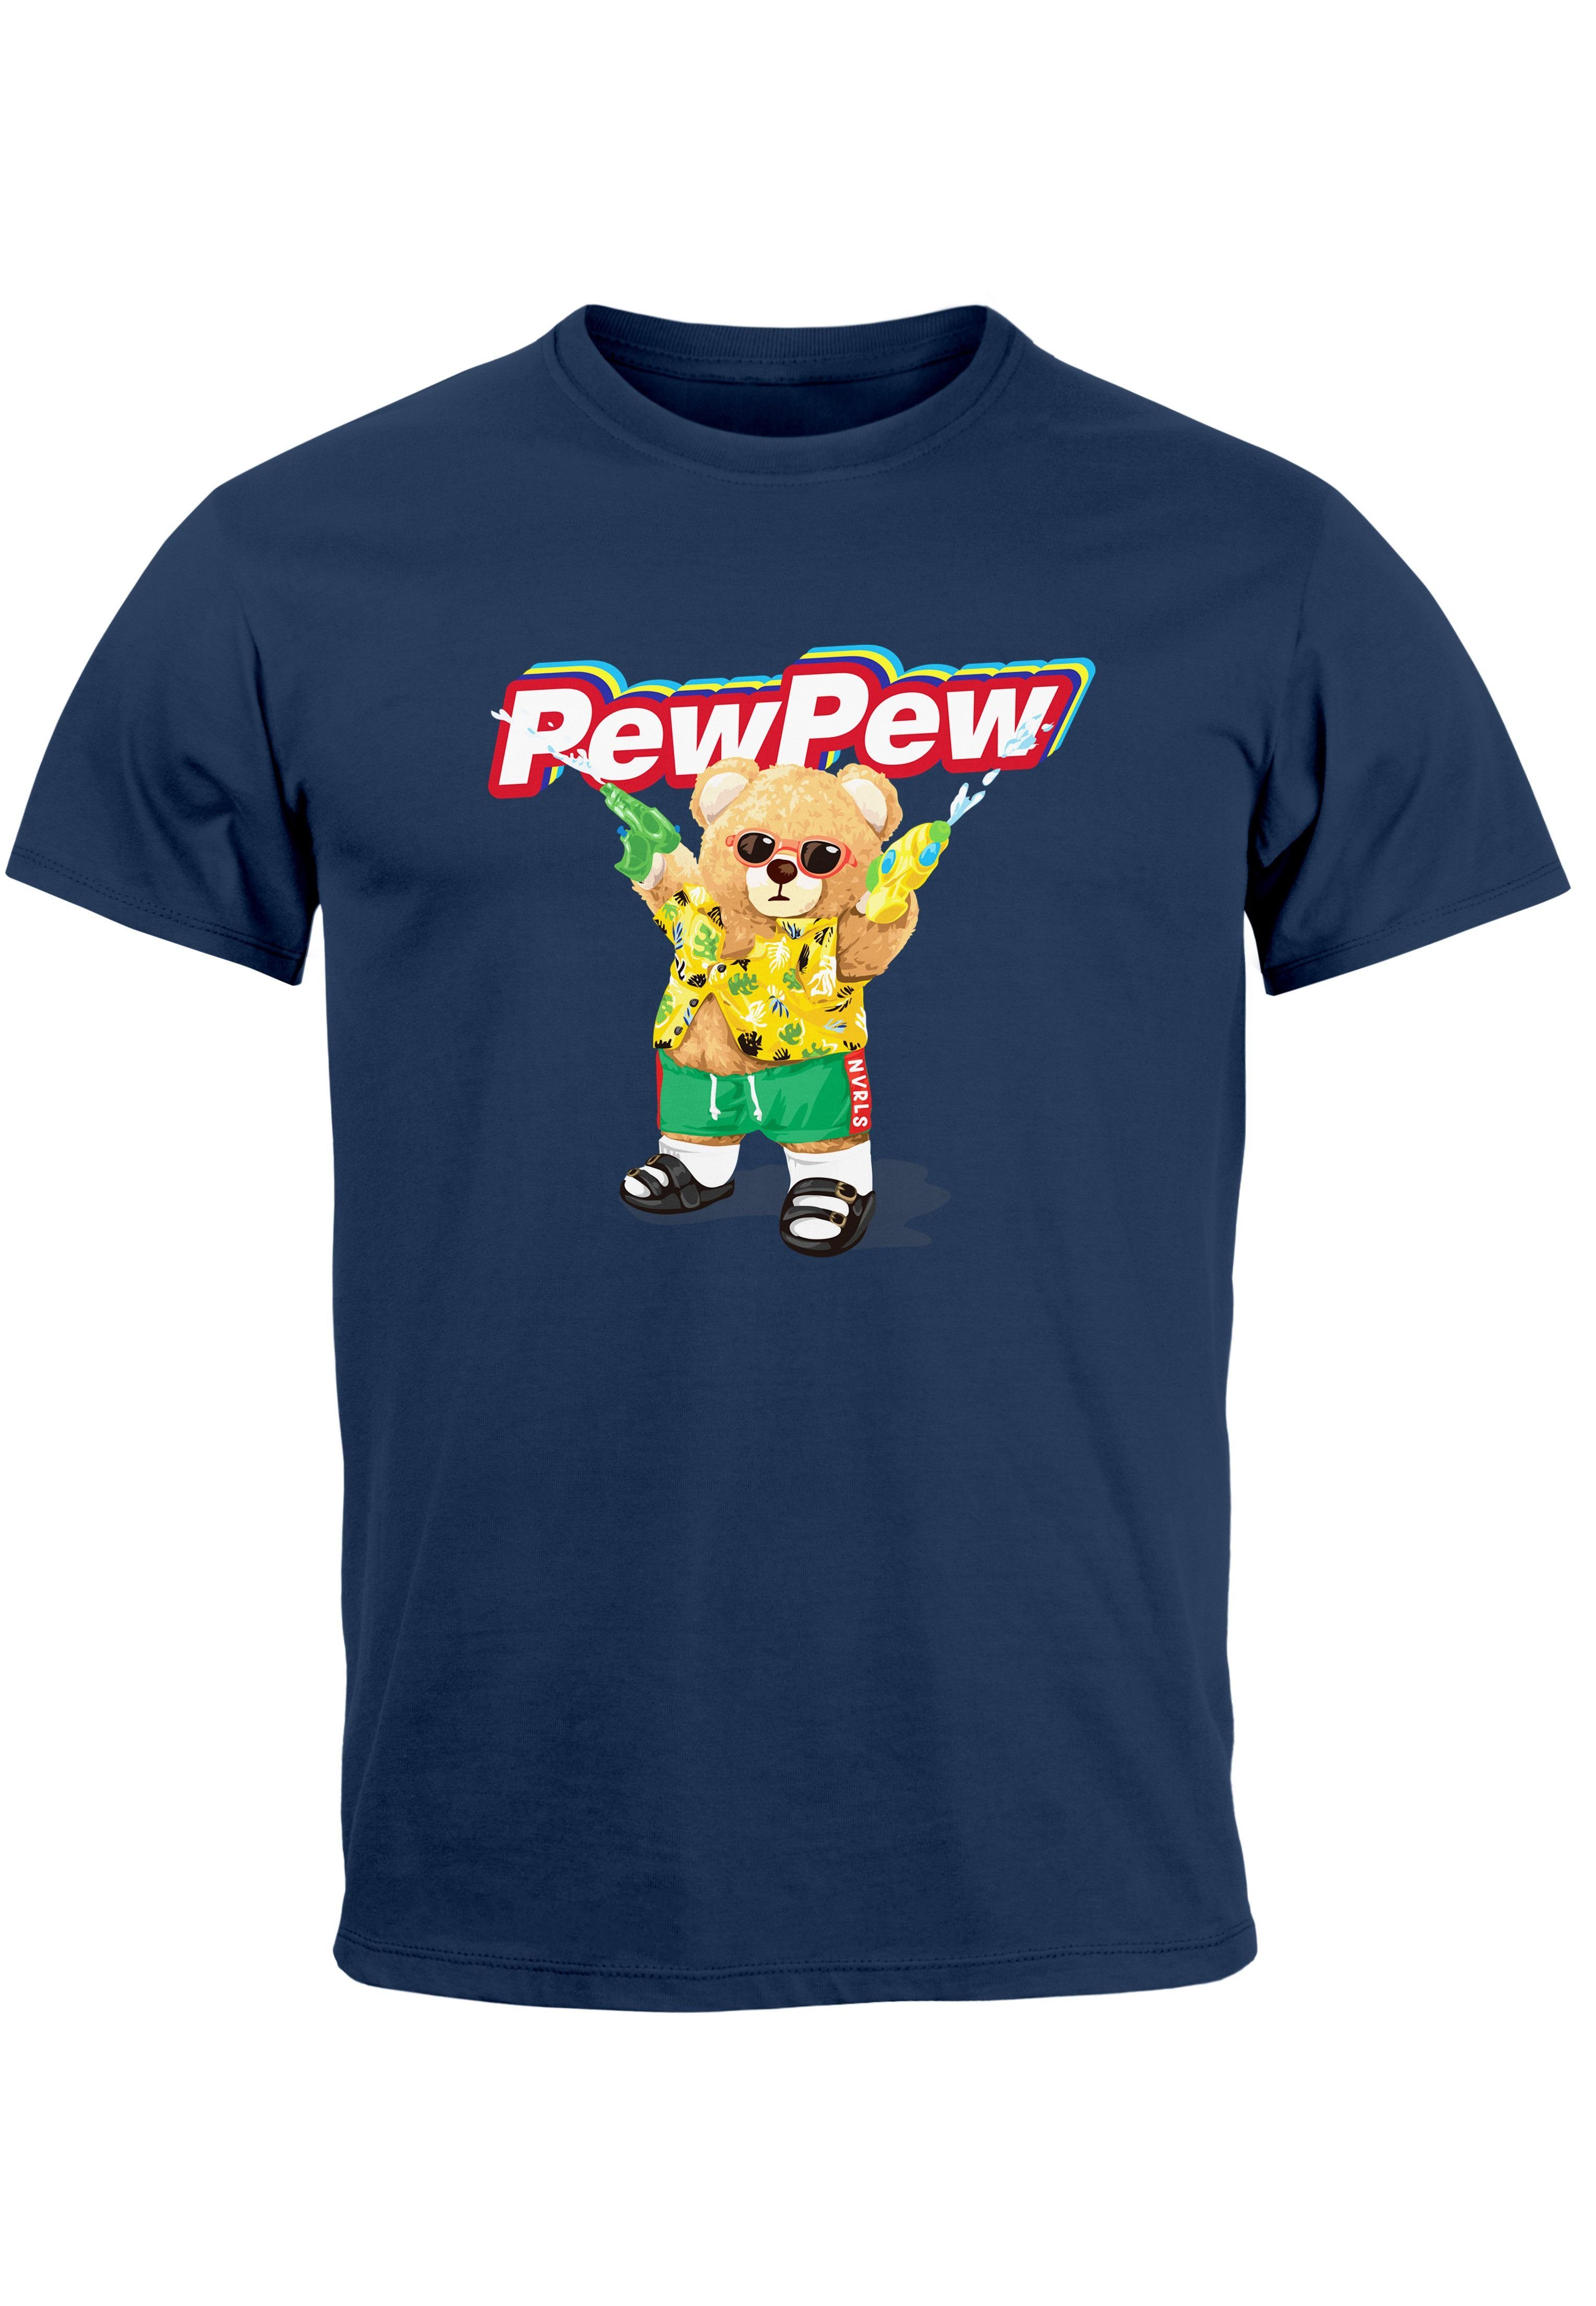 Neverless Print-Shirt Herren T-Shirt Pew Pew Bär Sommer Printshirt Aufdruck Motiv lustig Fas mit Print navy